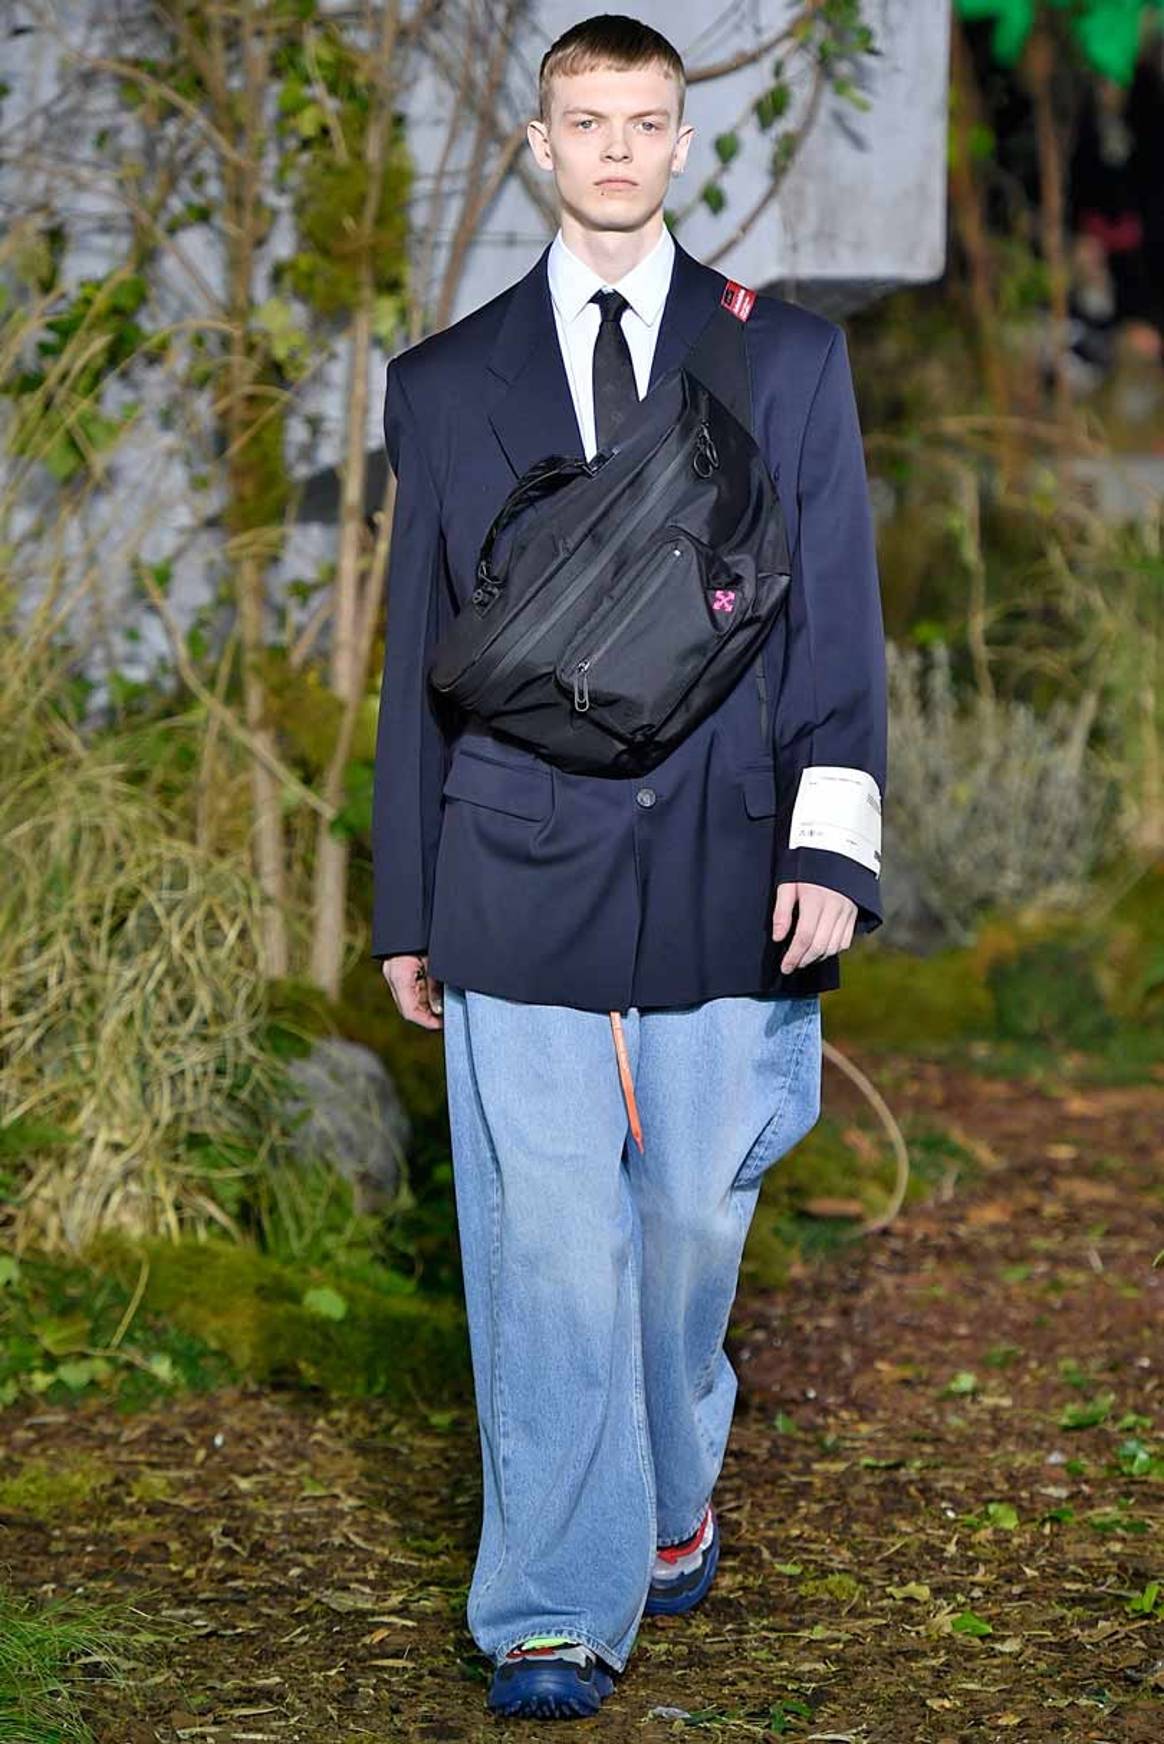 Louis Vuitton's Abloh makes suit and tie street on Paris catwalk